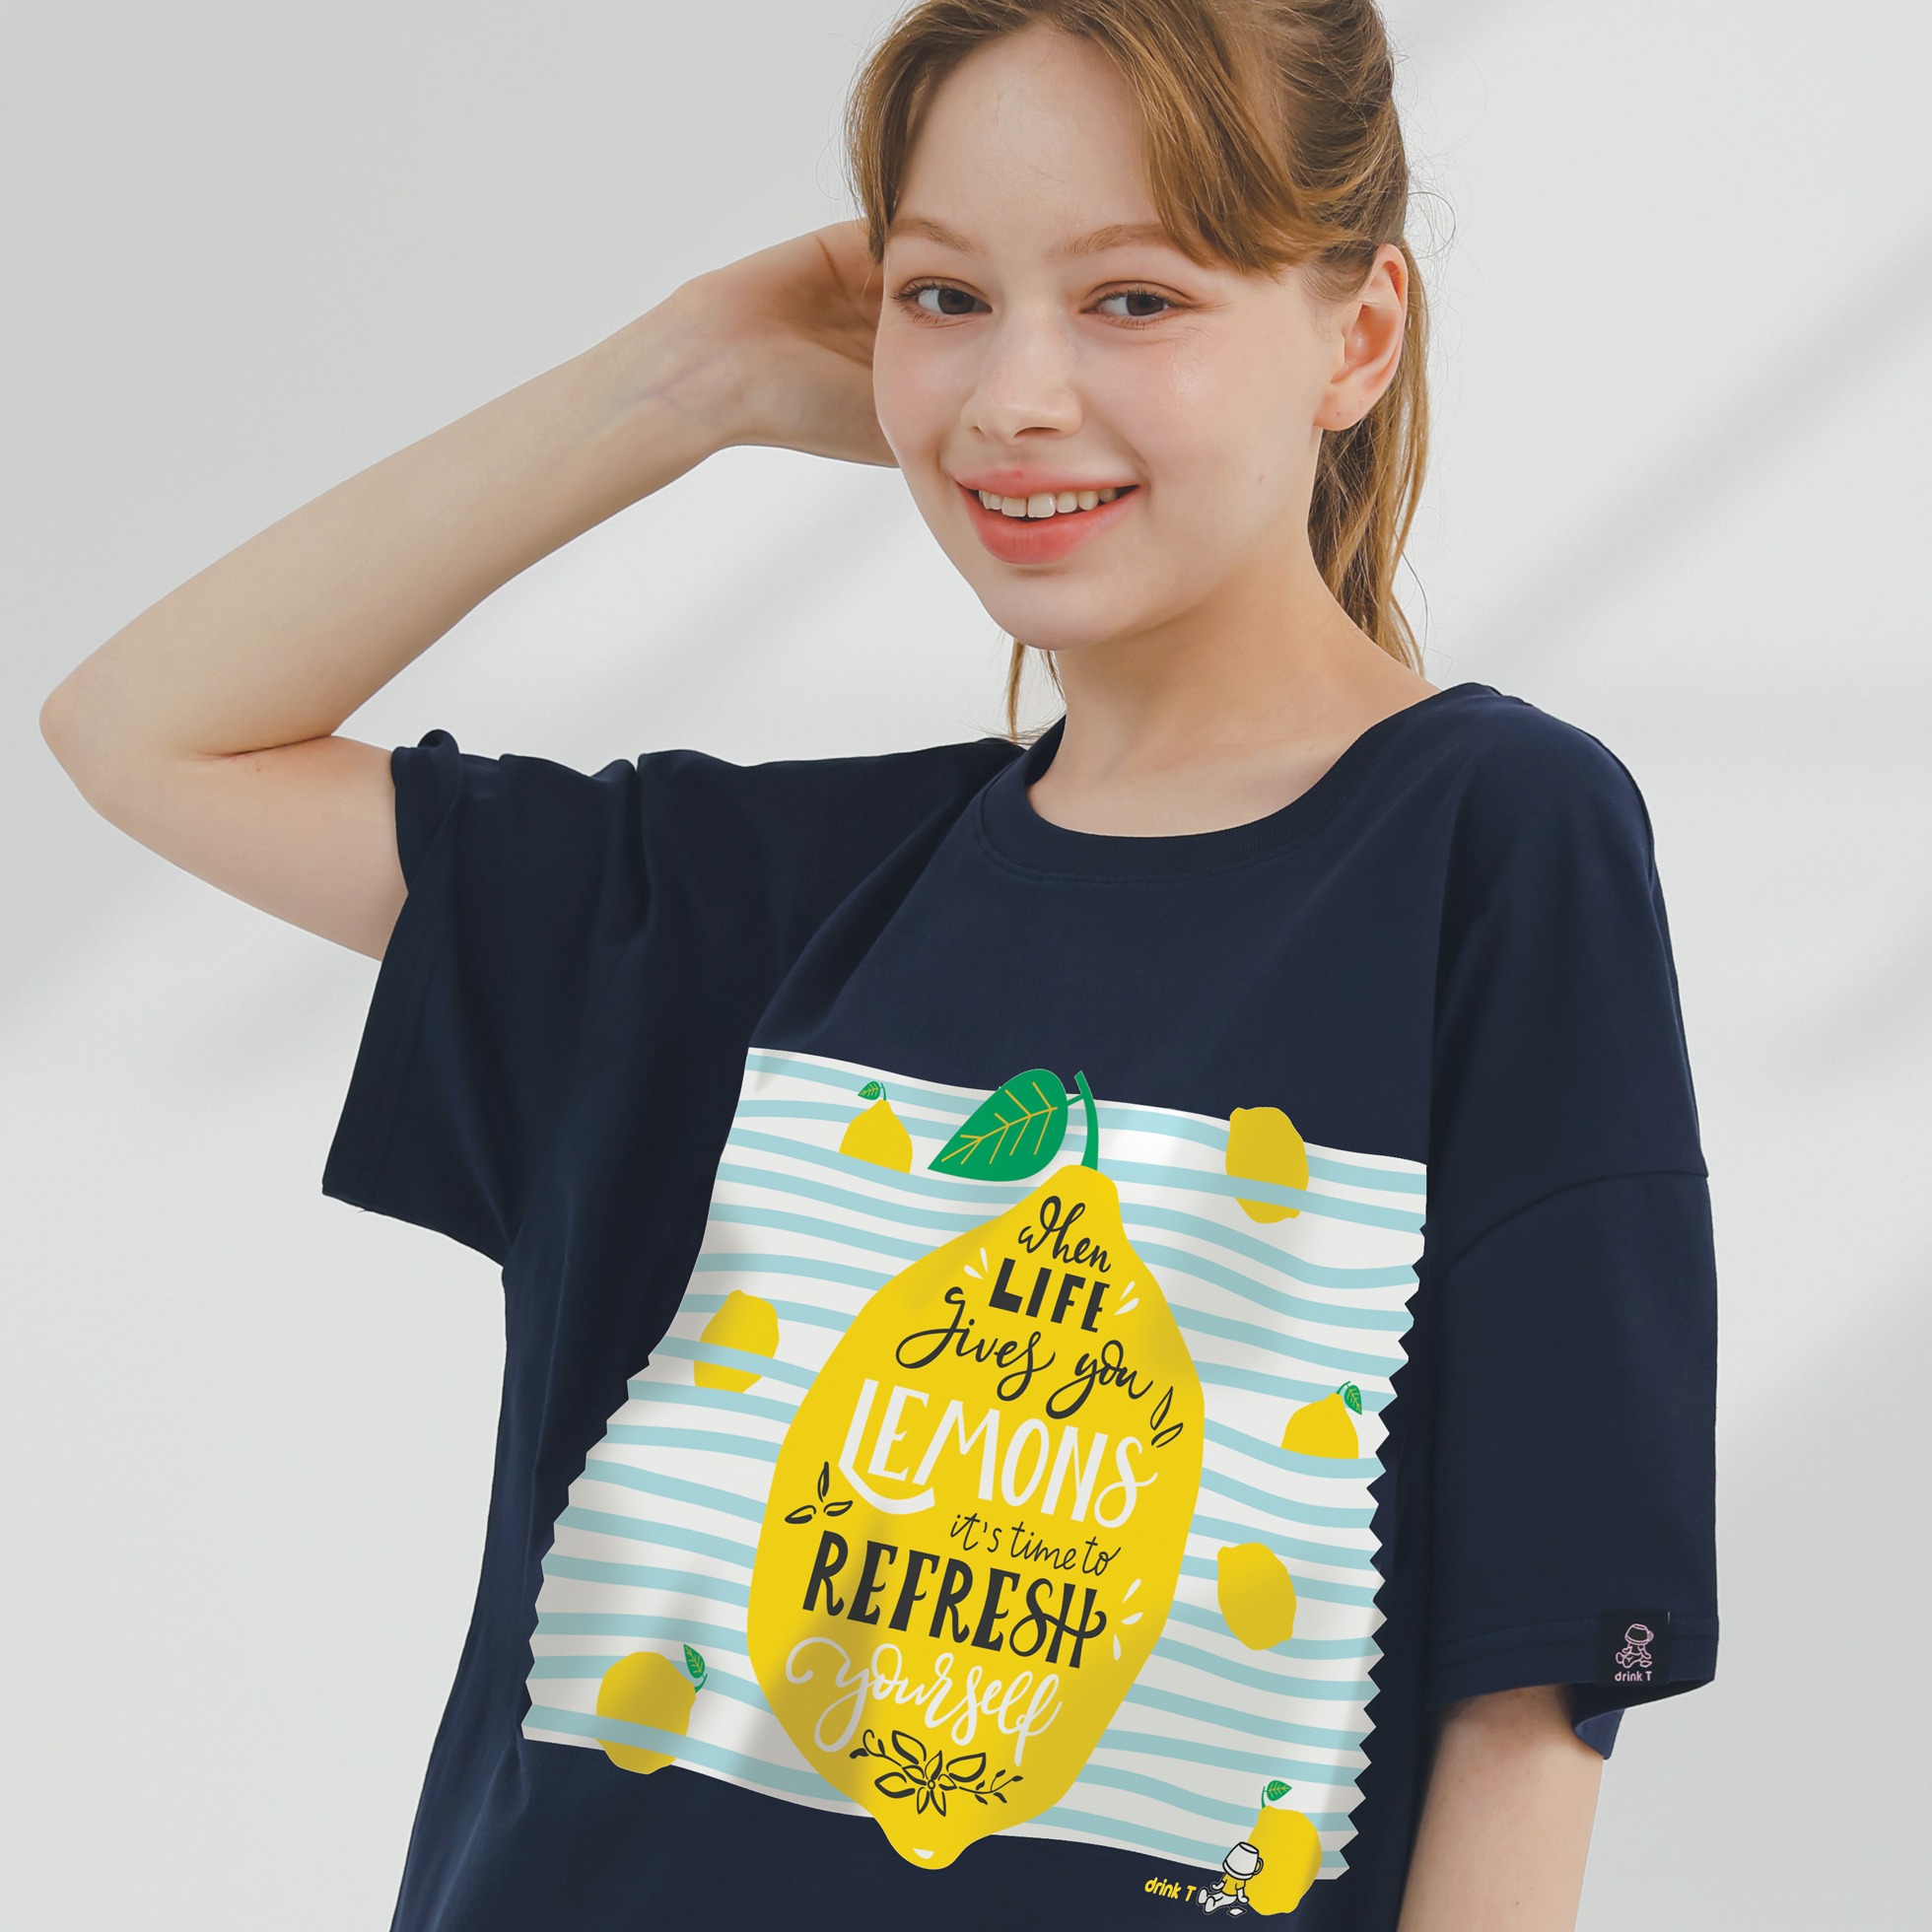 레몬 앤 라이프 - 바디커버 오버핏 노브라티셔츠